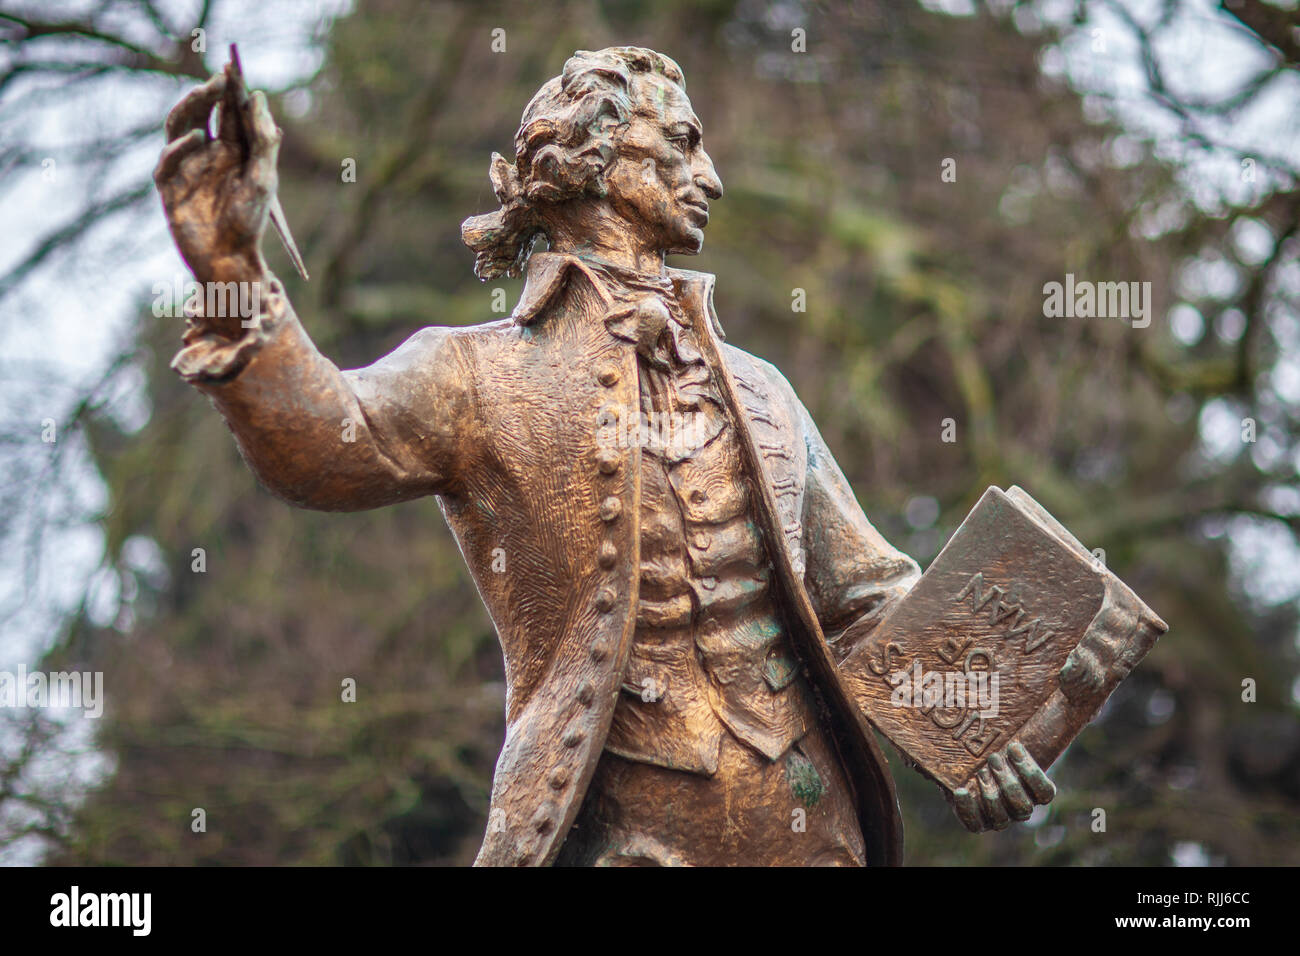 Thomas Paine Thetford - statue de Thomas Paine, l'un des pères fondateurs des USA - Naissance Thetford Norfolk UK - Sculpteur Sir Charles Thomas Wheeler Banque D'Images